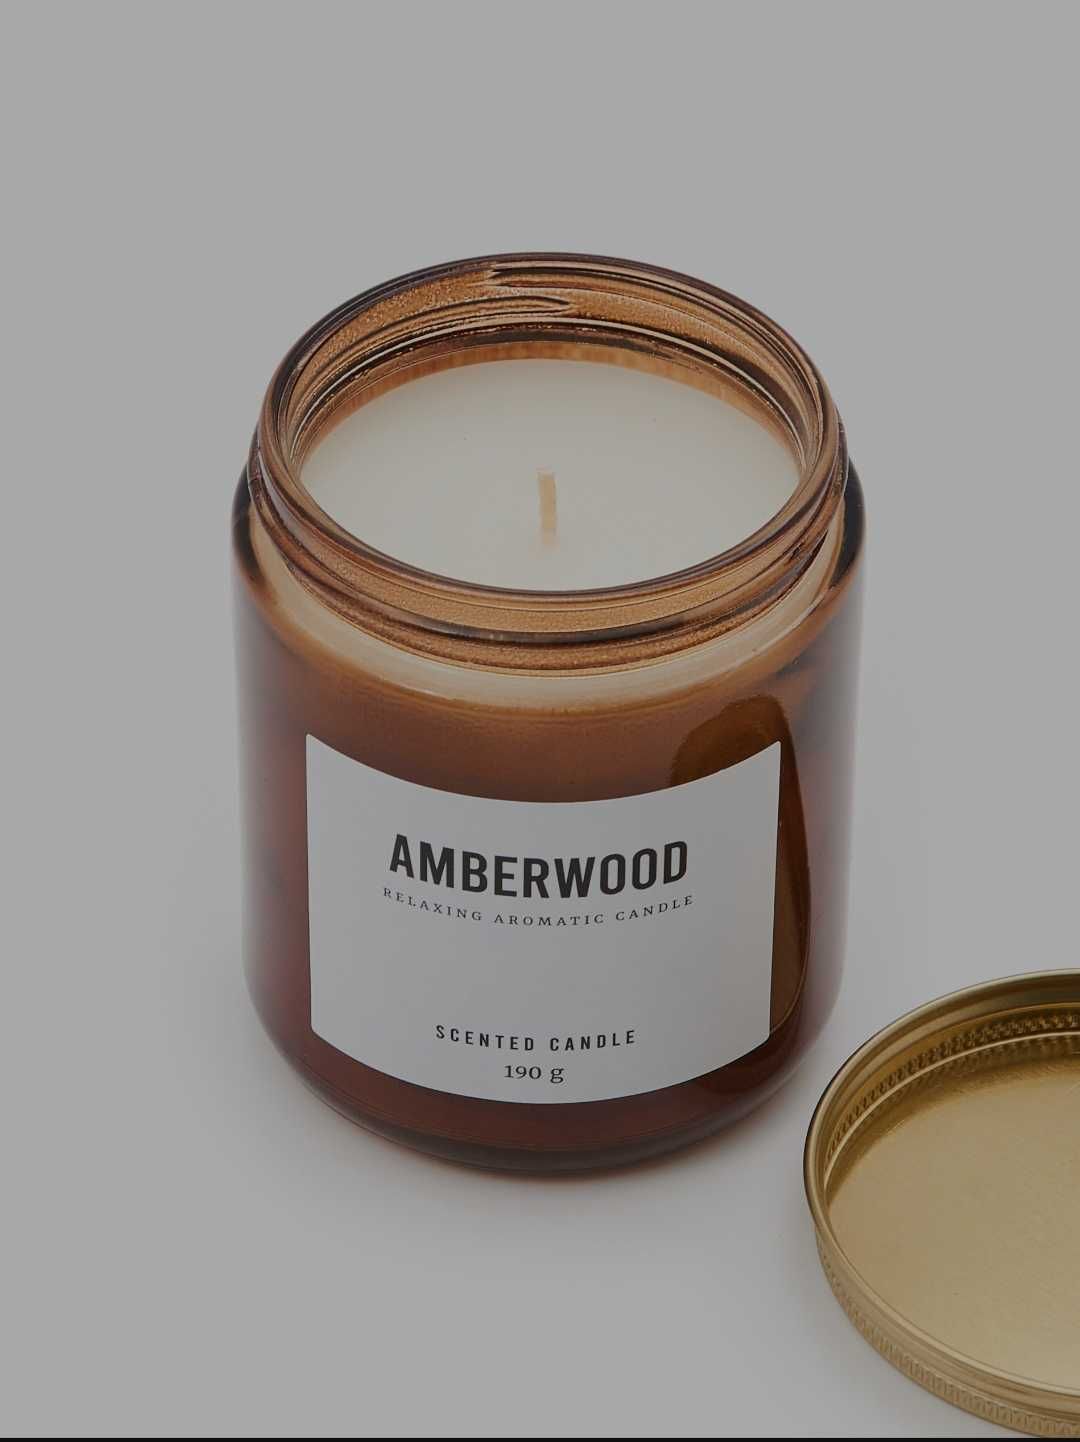 Świeca zapachowa Amberwood w słoiku. Długość świecenia do 36 godzin.